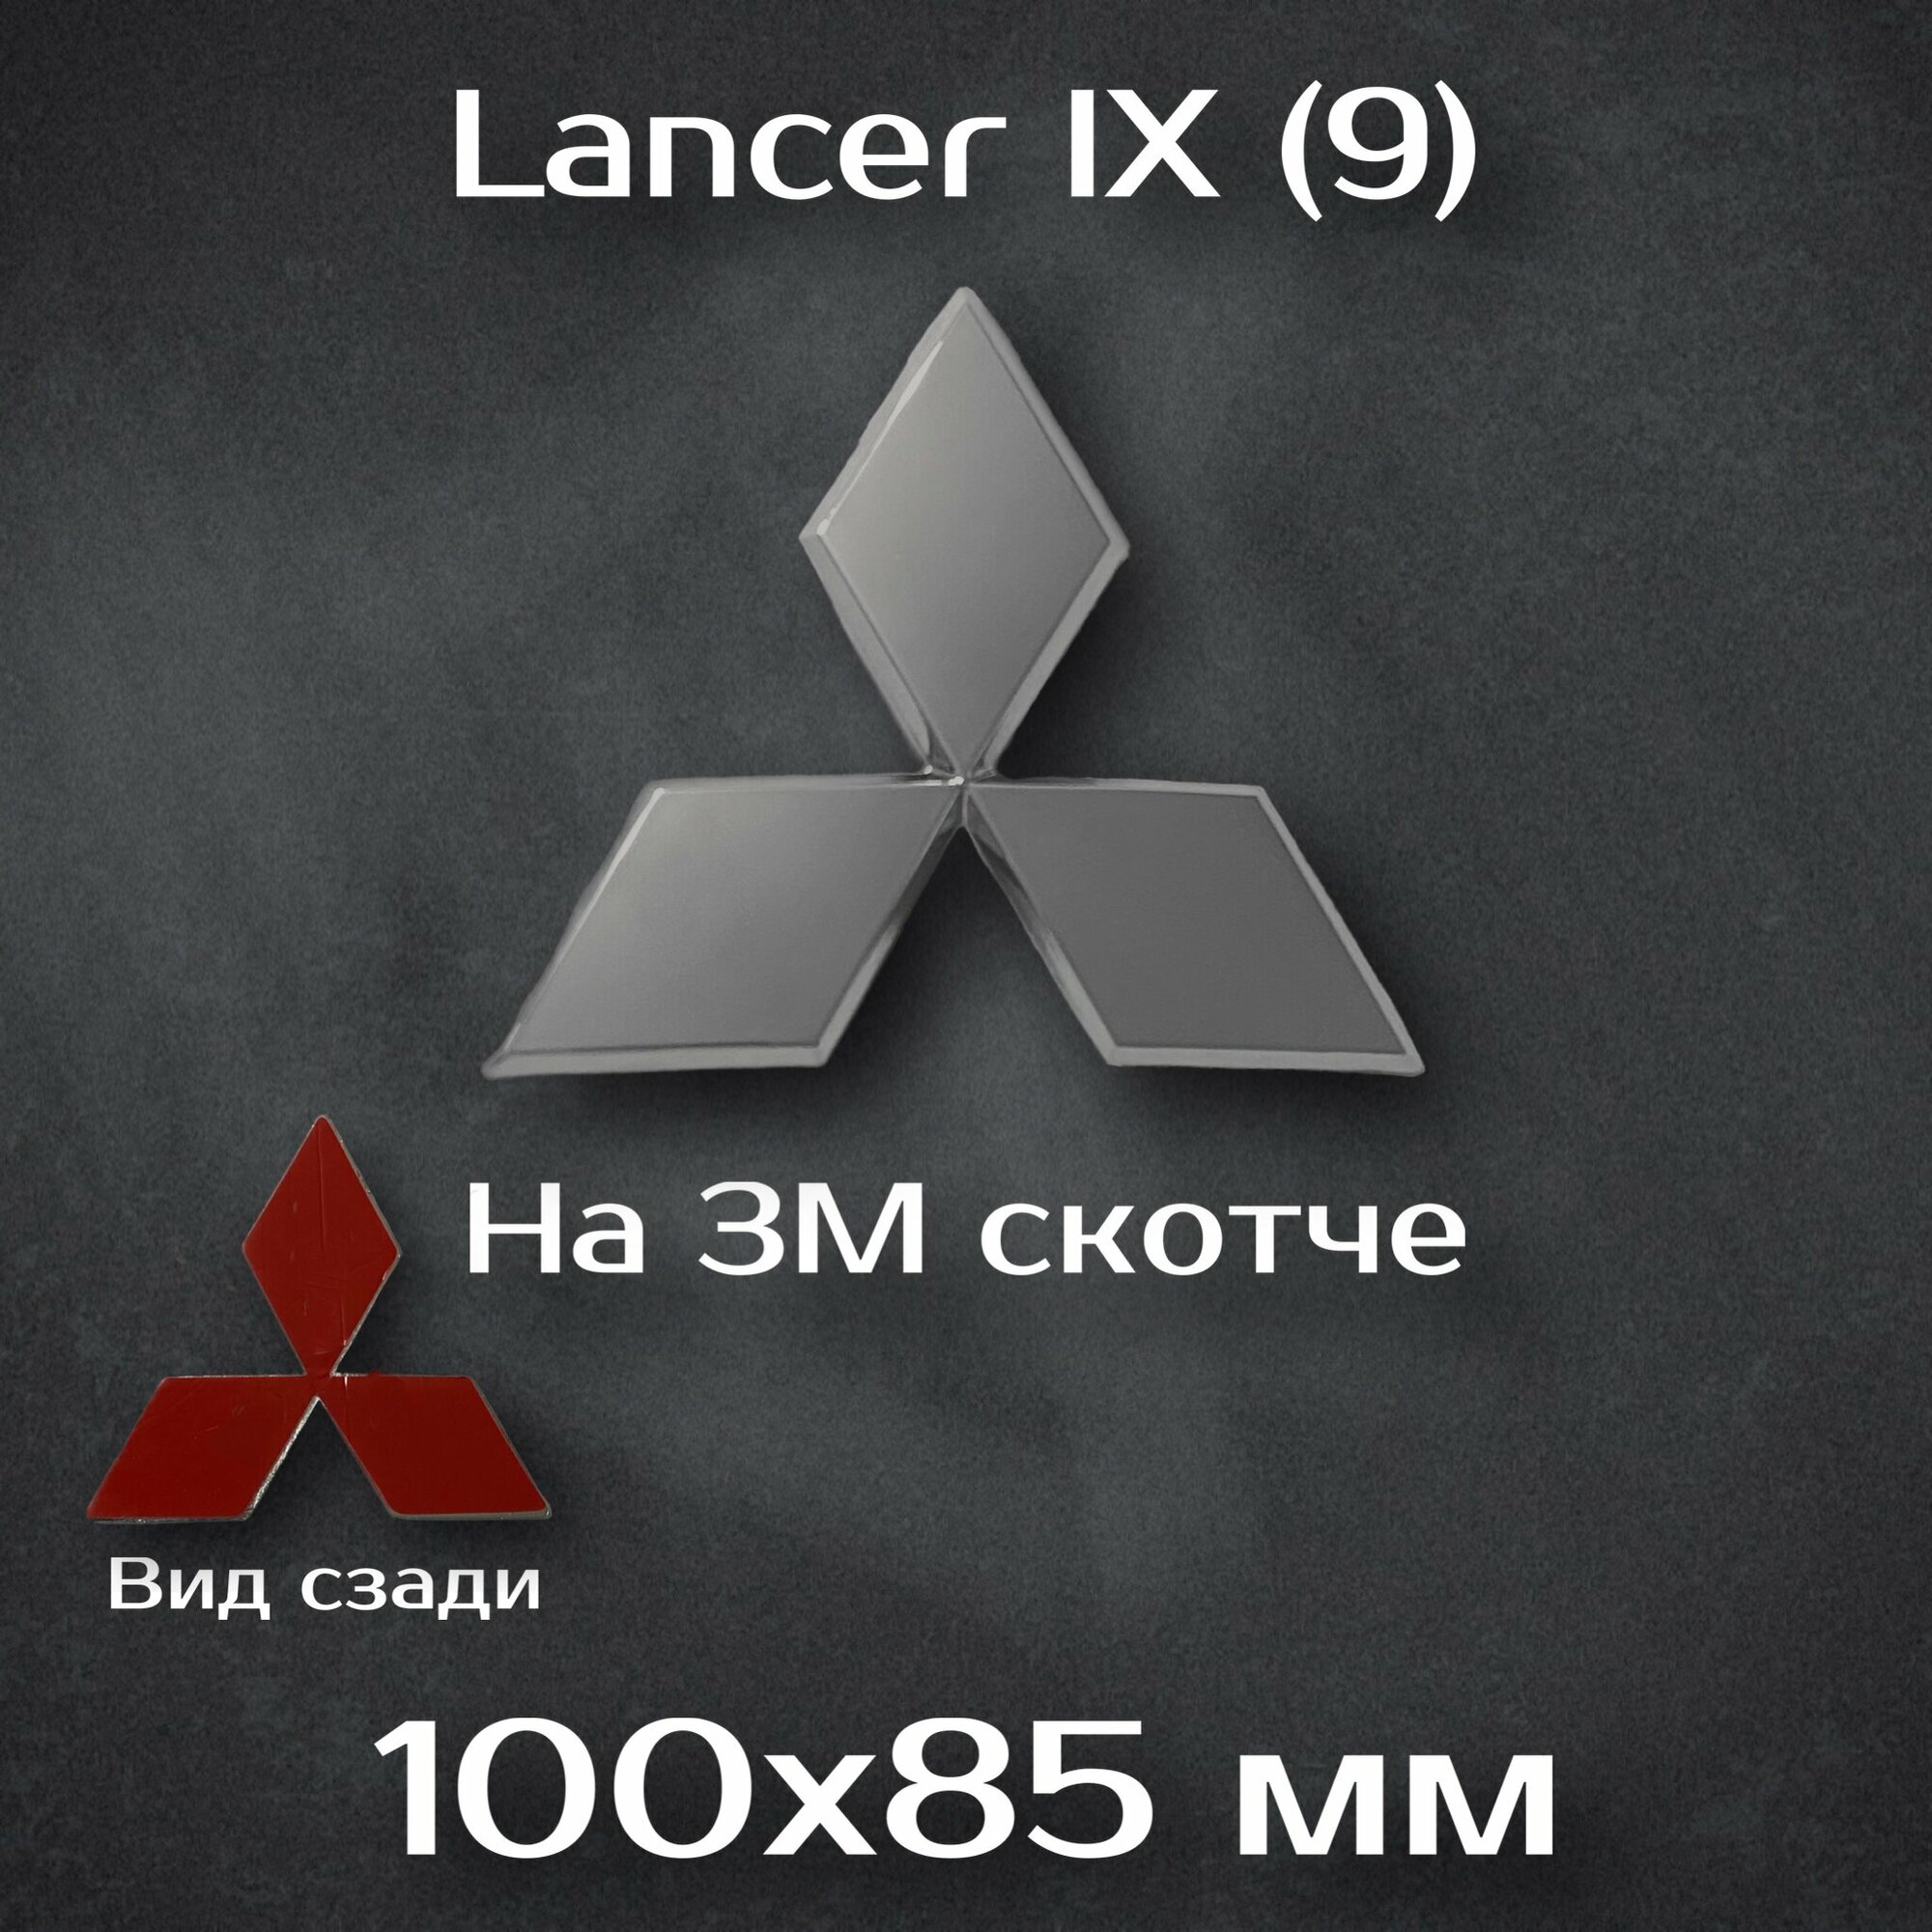 Эмблема Mitsubishi Lancer X передняя / шильдик на Mitsubishi Lancer 10 / эмблема митсубиси лансер 10